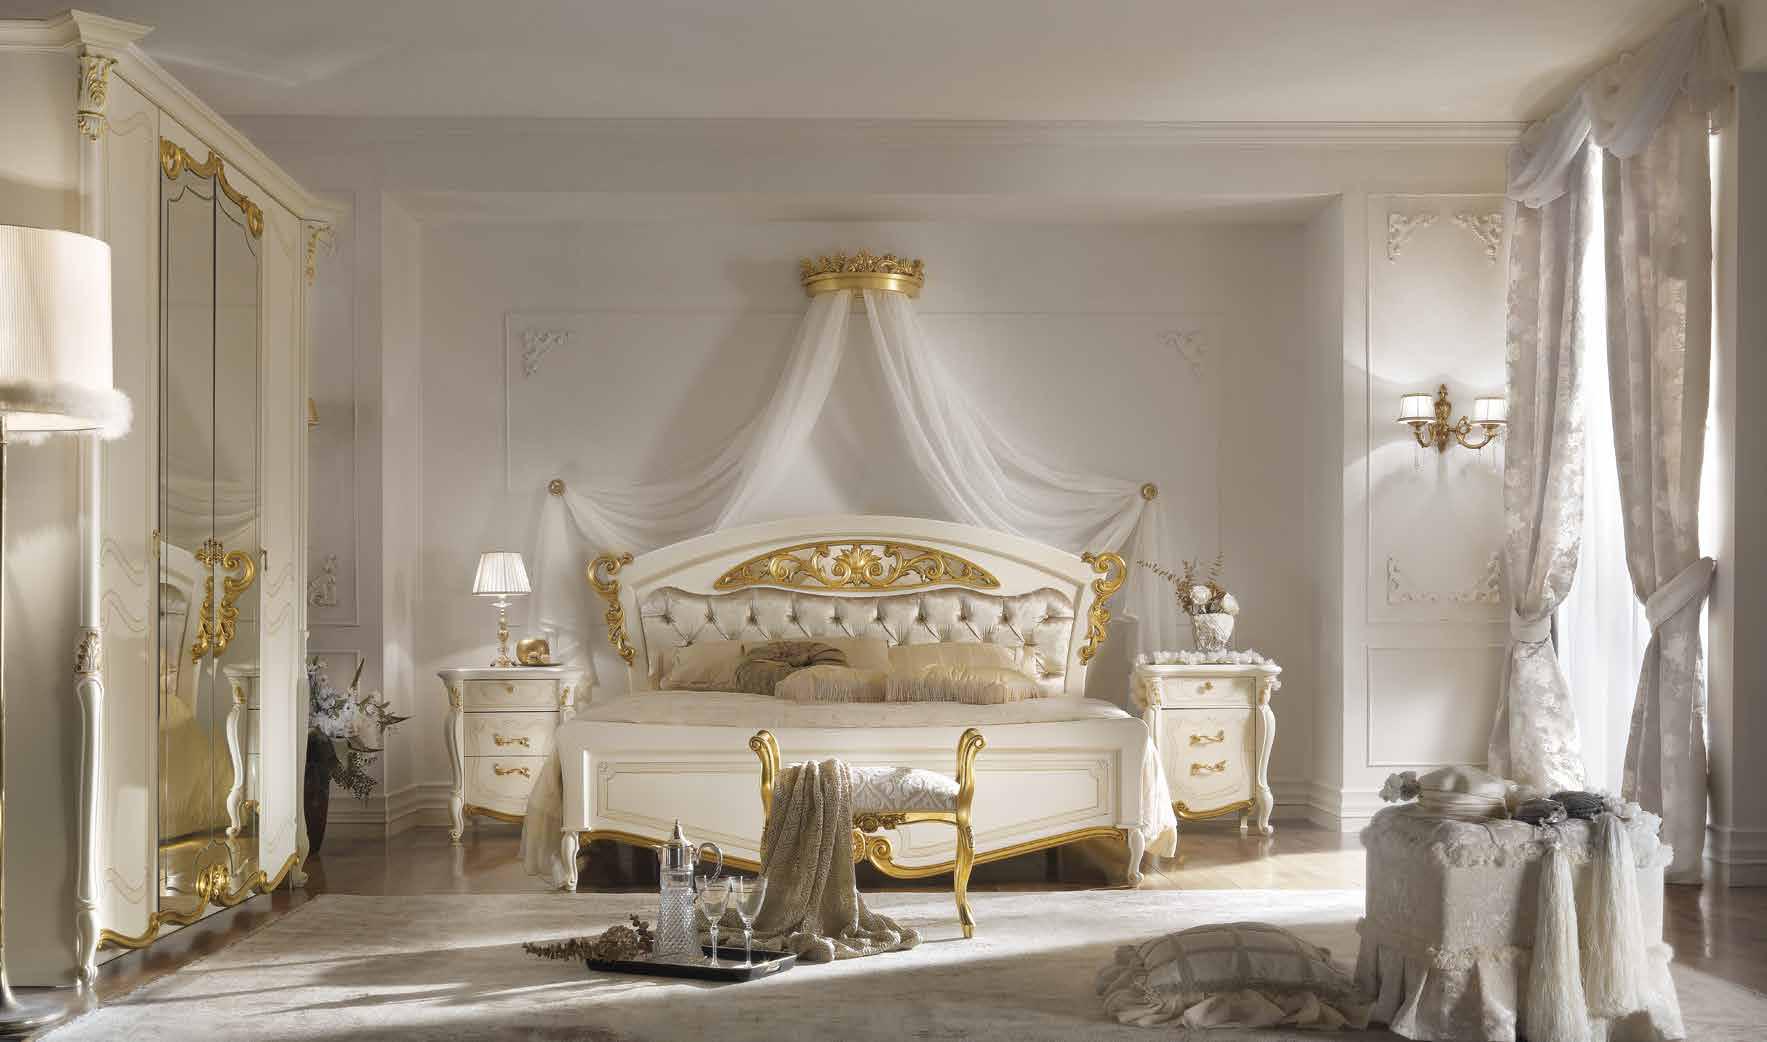 Кровать Casa+39 La Fenice laccato, двуспальная, изголовье-ткань, 160x200 см (1304)1304